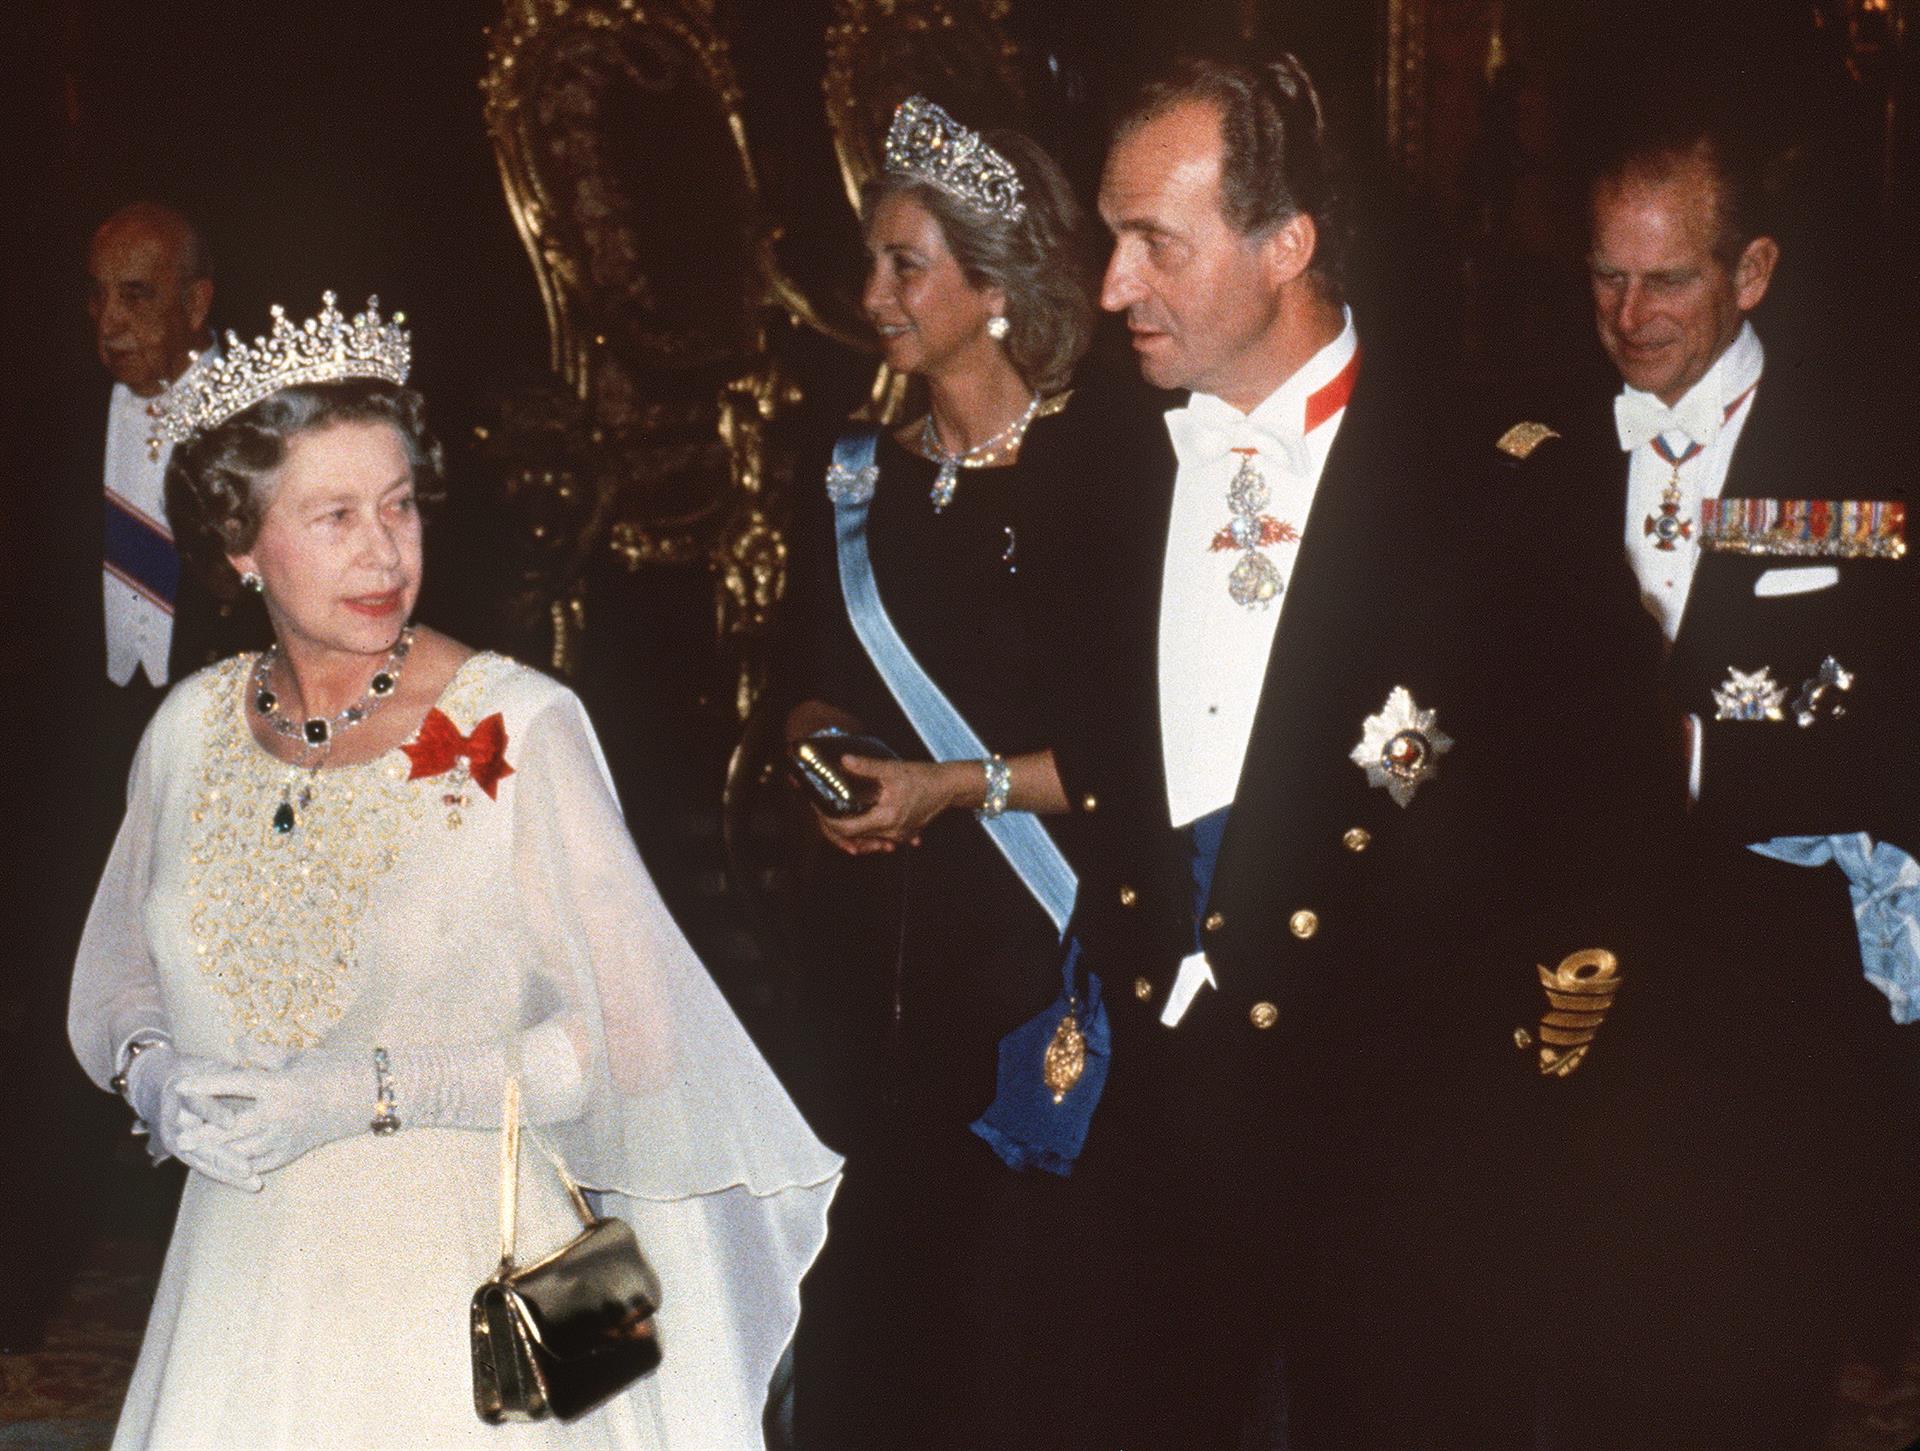 El rey emérito Juan Carlos asistirá al funeral por la reina Isabel II